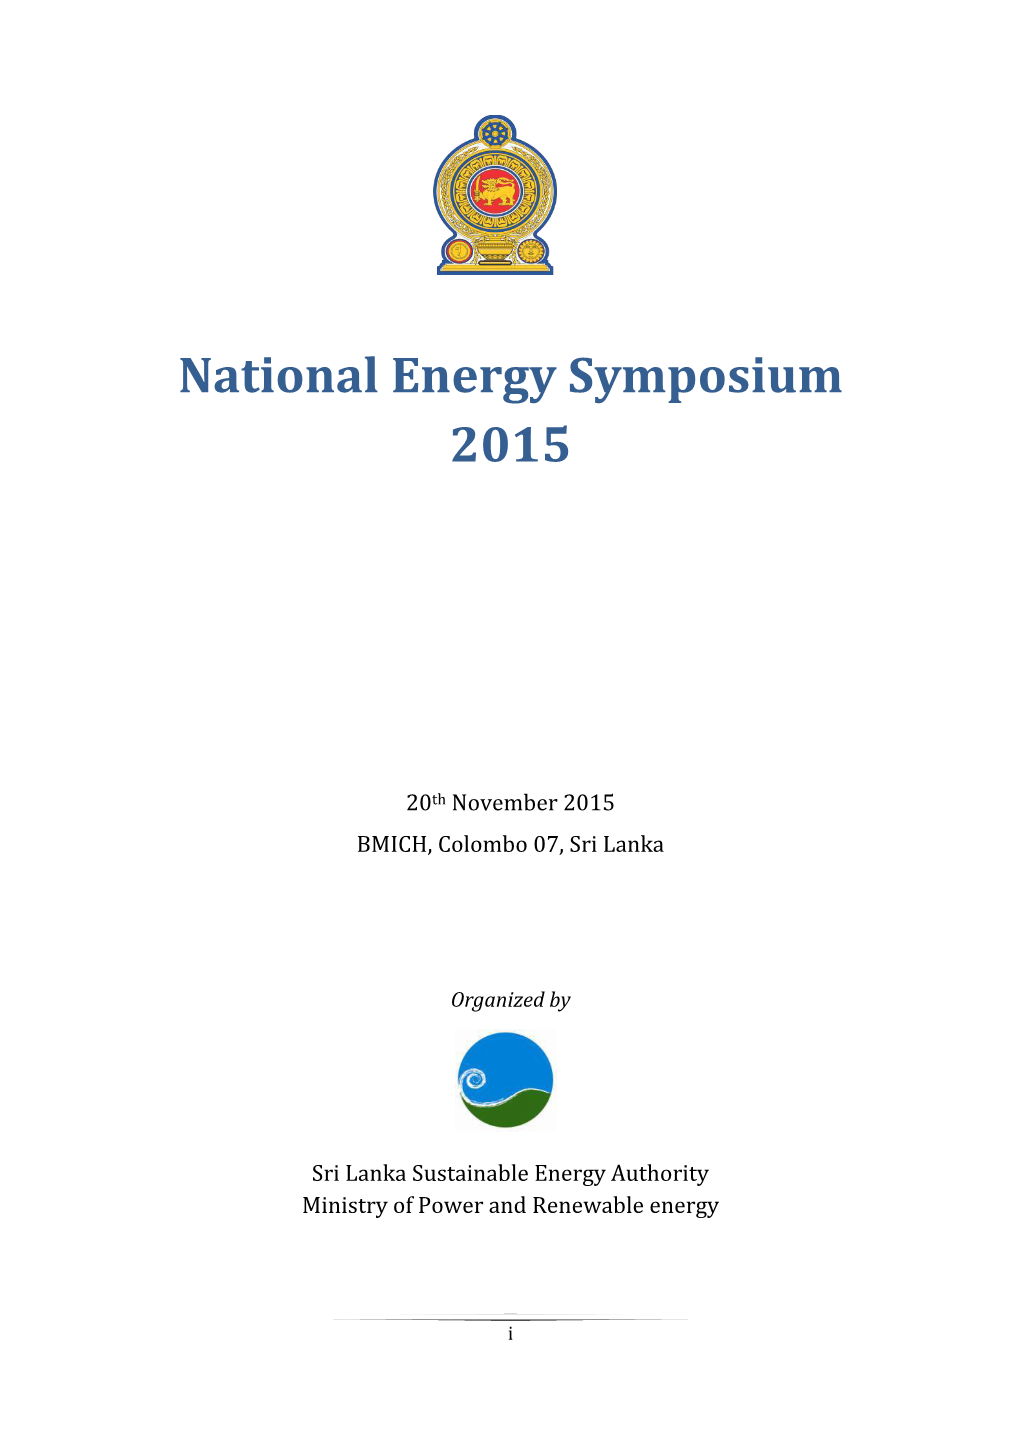 National Energy Symposium 2015